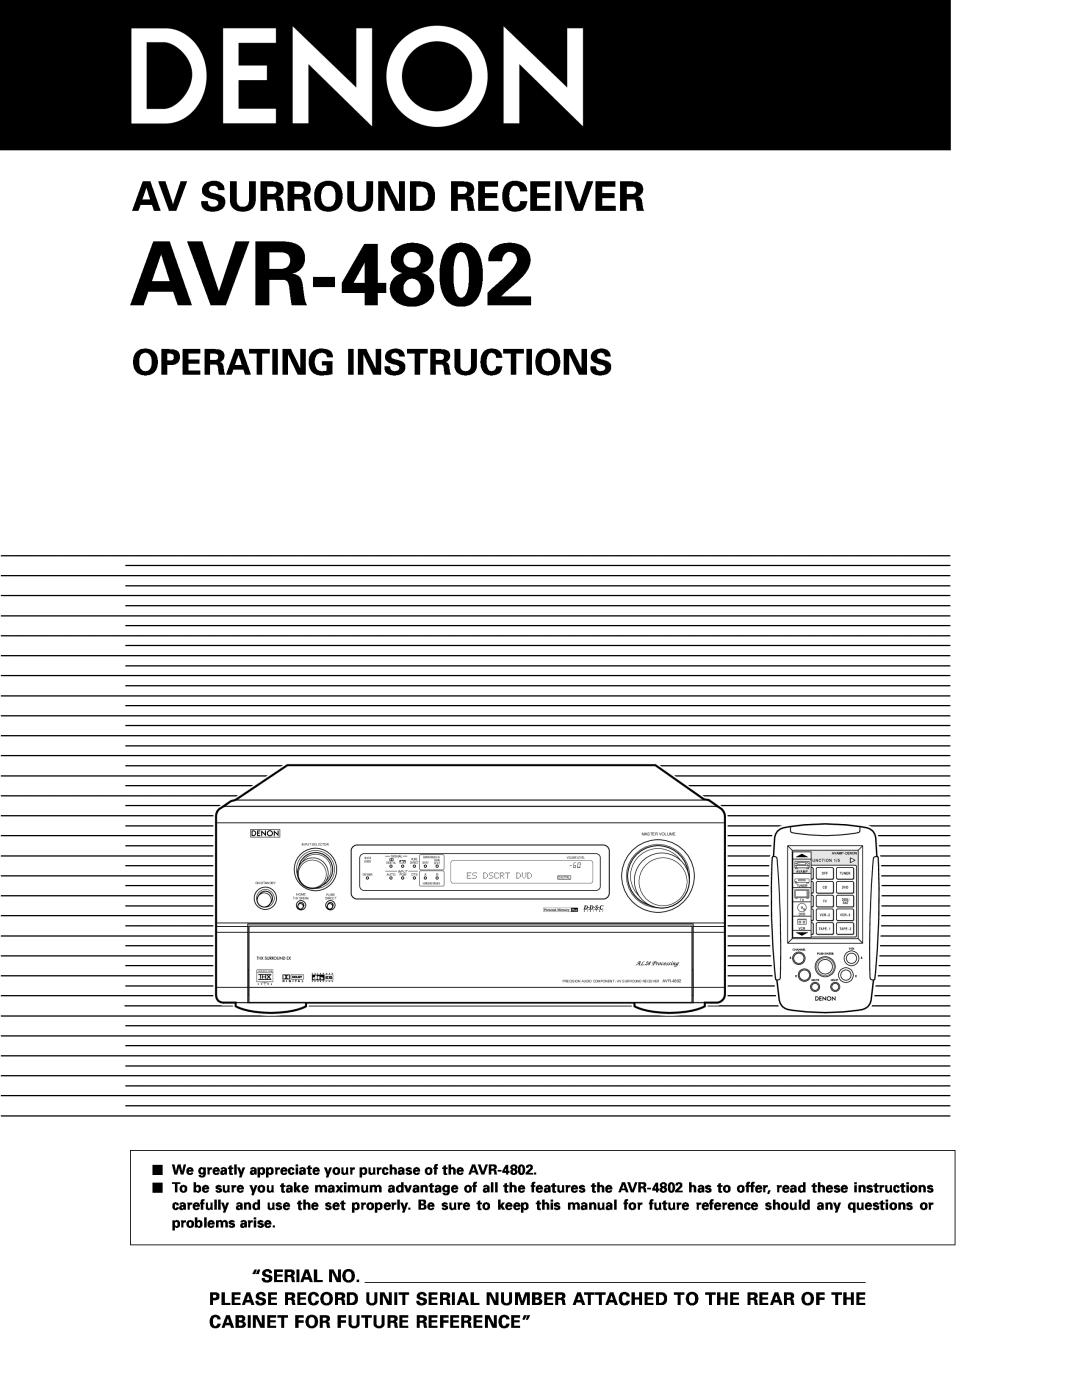 Denon AVR-4802 manual Operating Instructions, “Serial No, Av Surround Receiver 